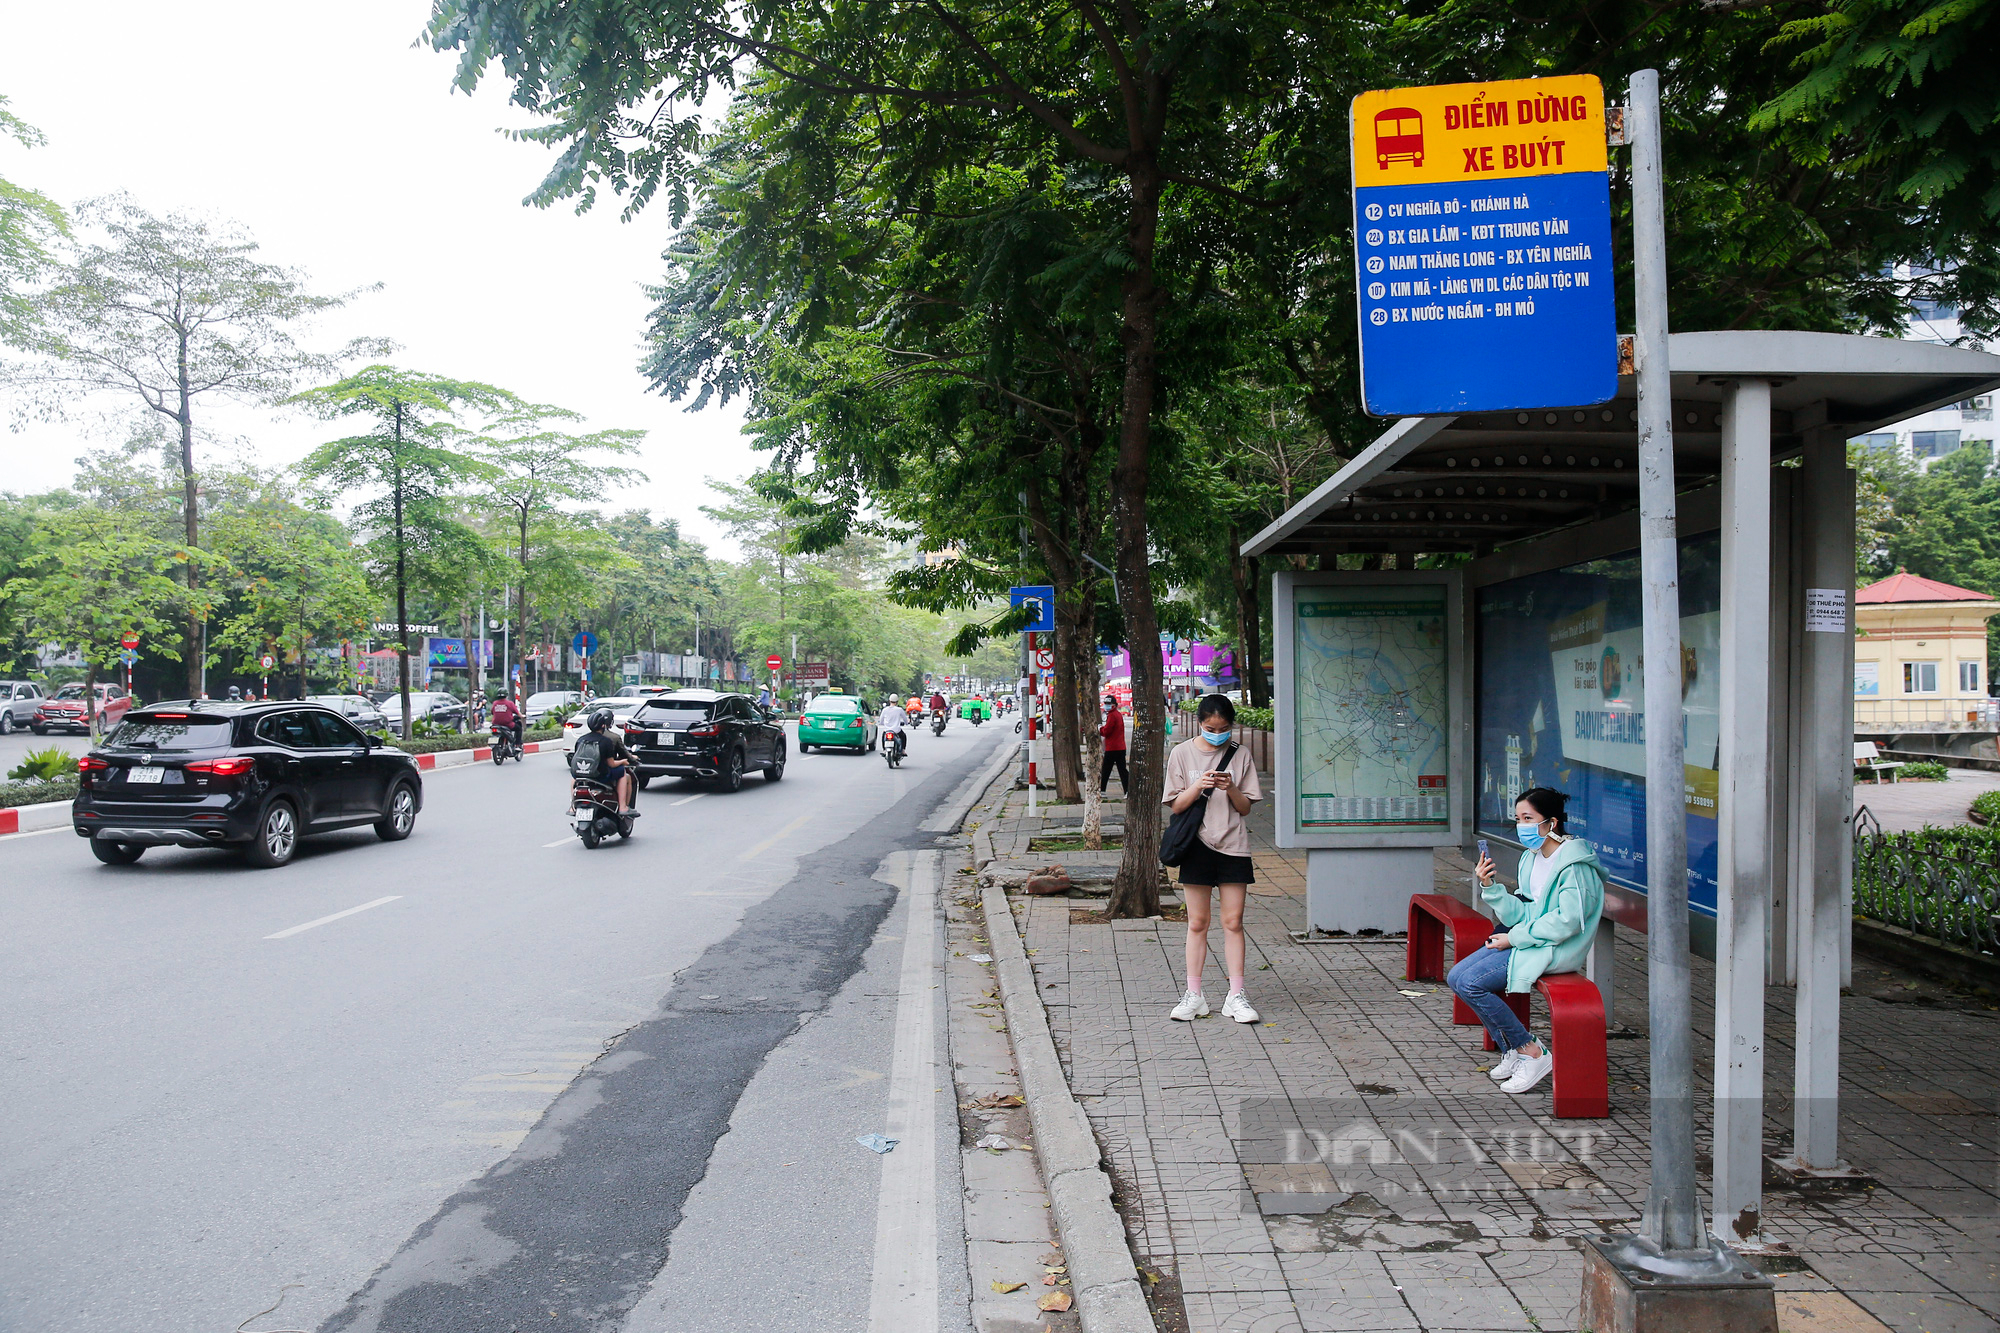 Cận cảnh khu vực hồ Ngọc Khánh sắp được Hà Nội triển khai thành phố đi bộ - Ảnh 11.